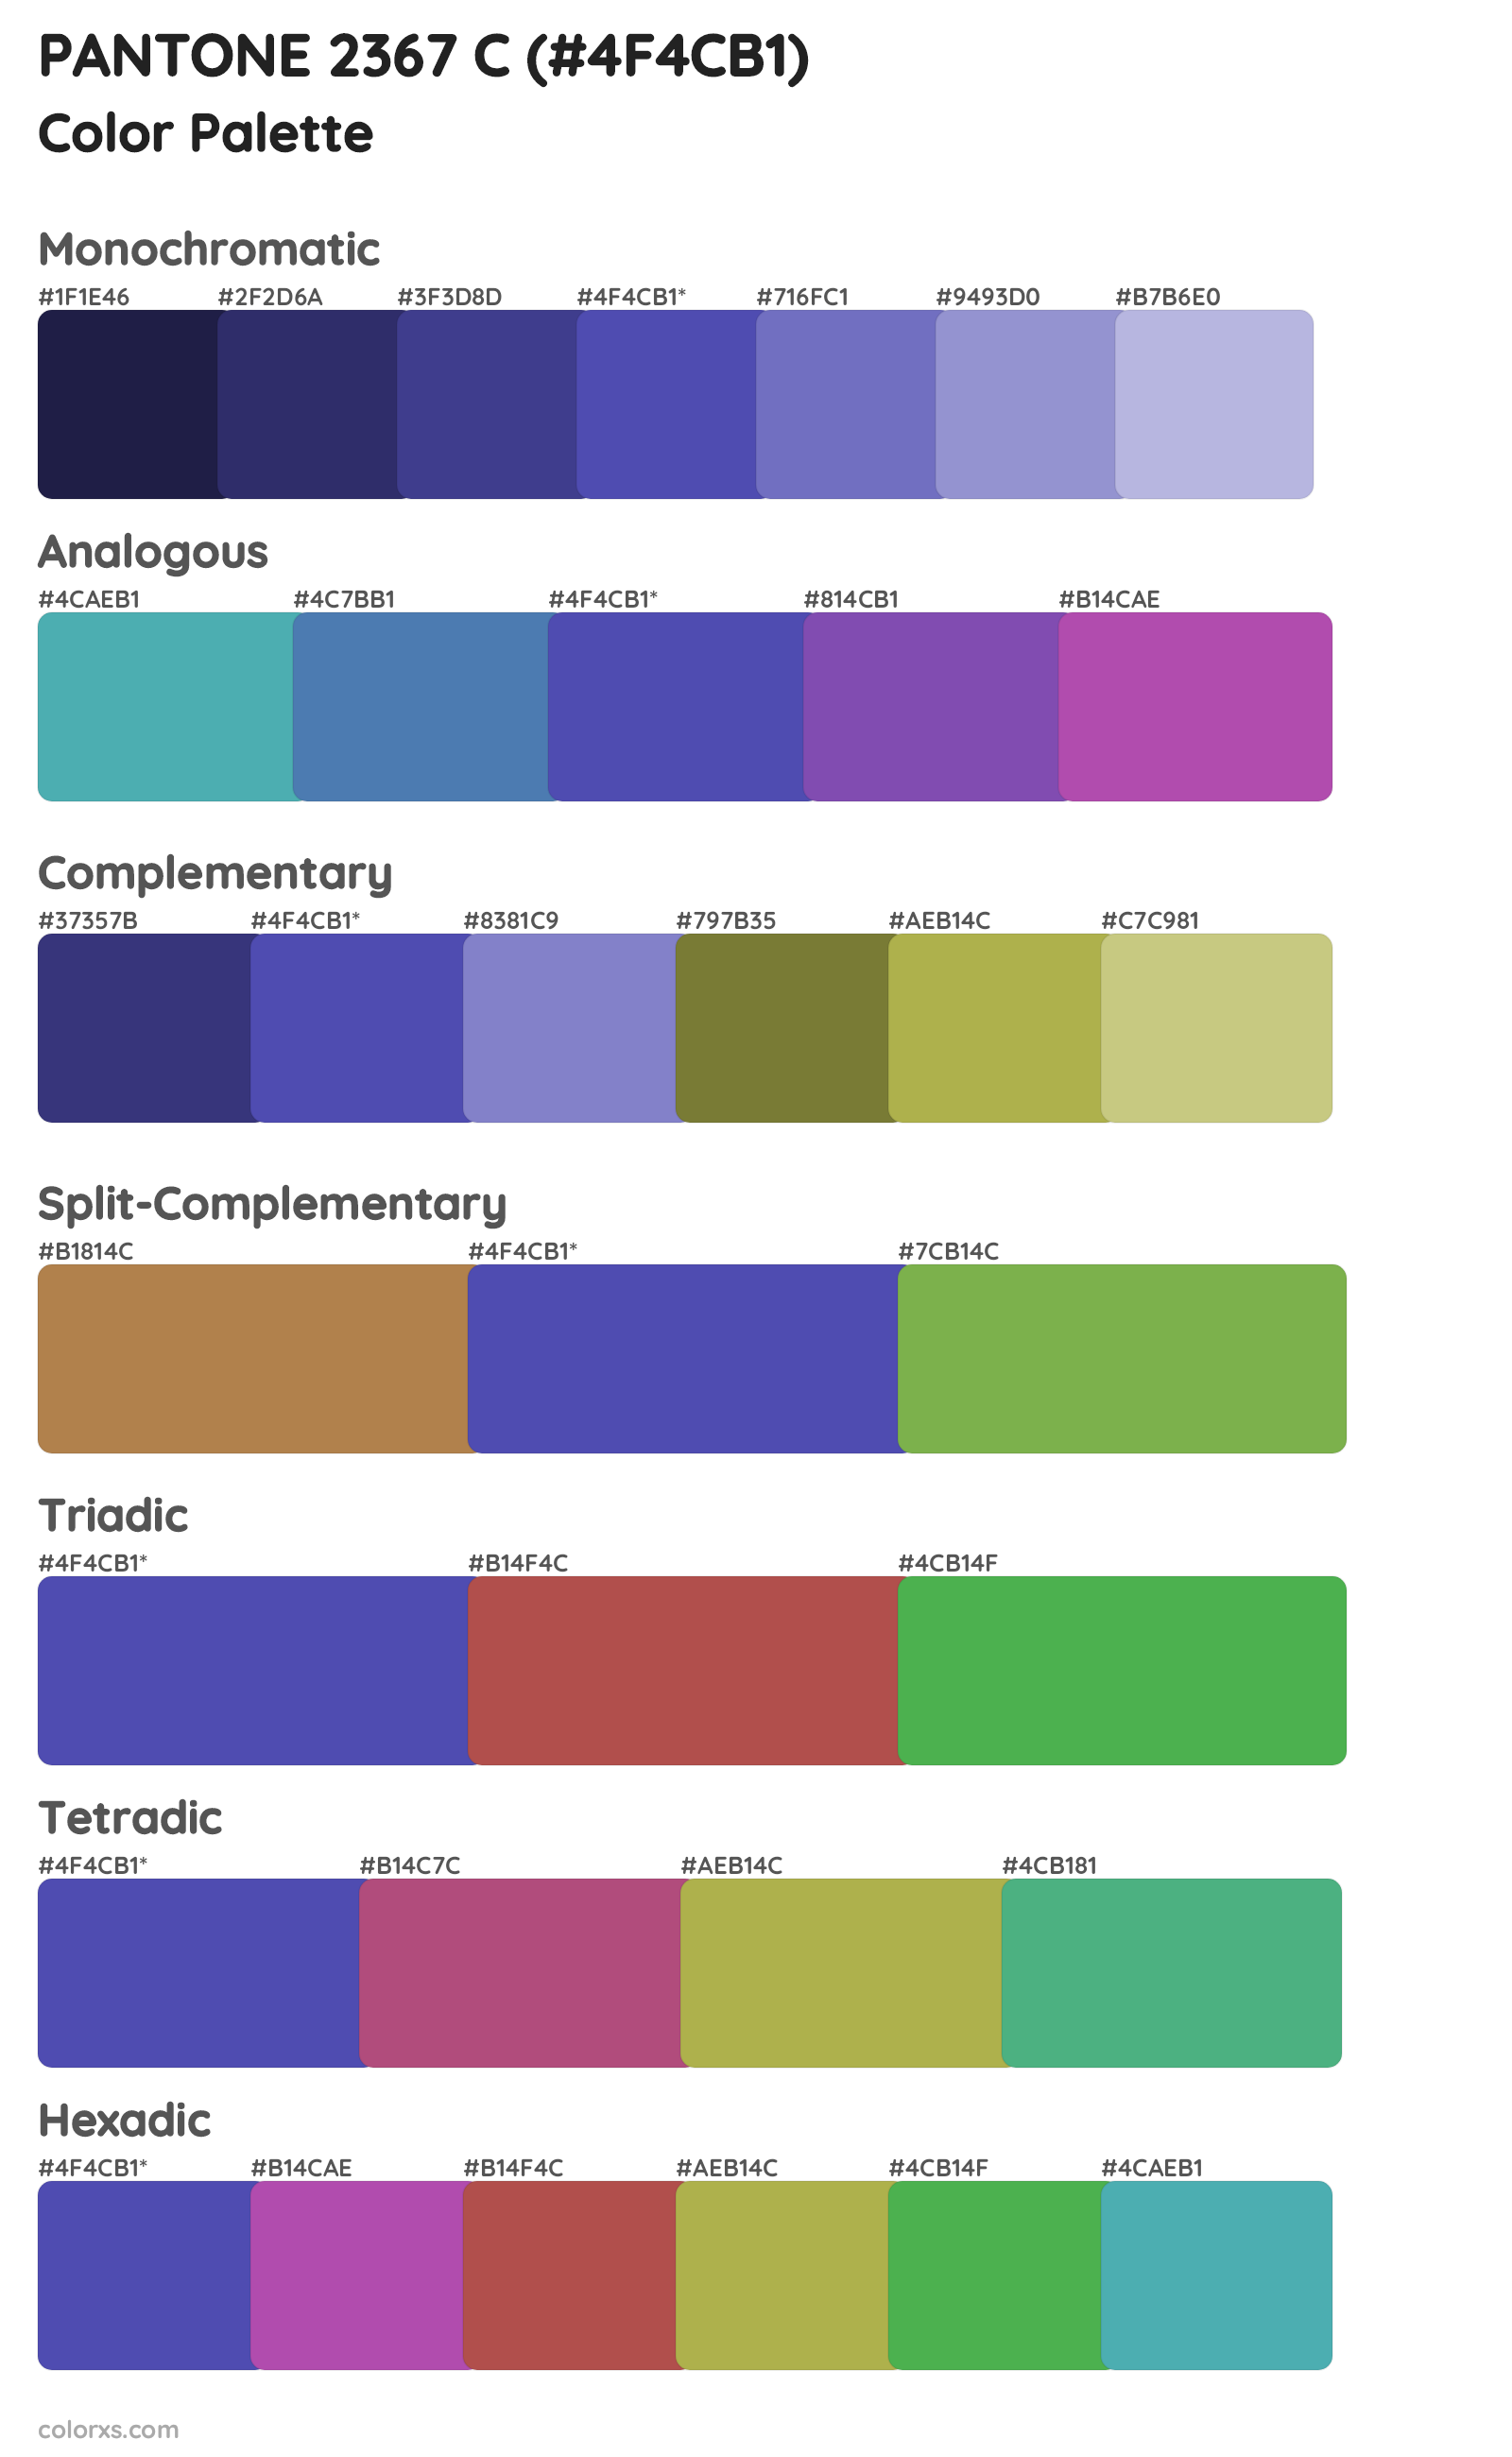 PANTONE 2367 C Color Scheme Palettes